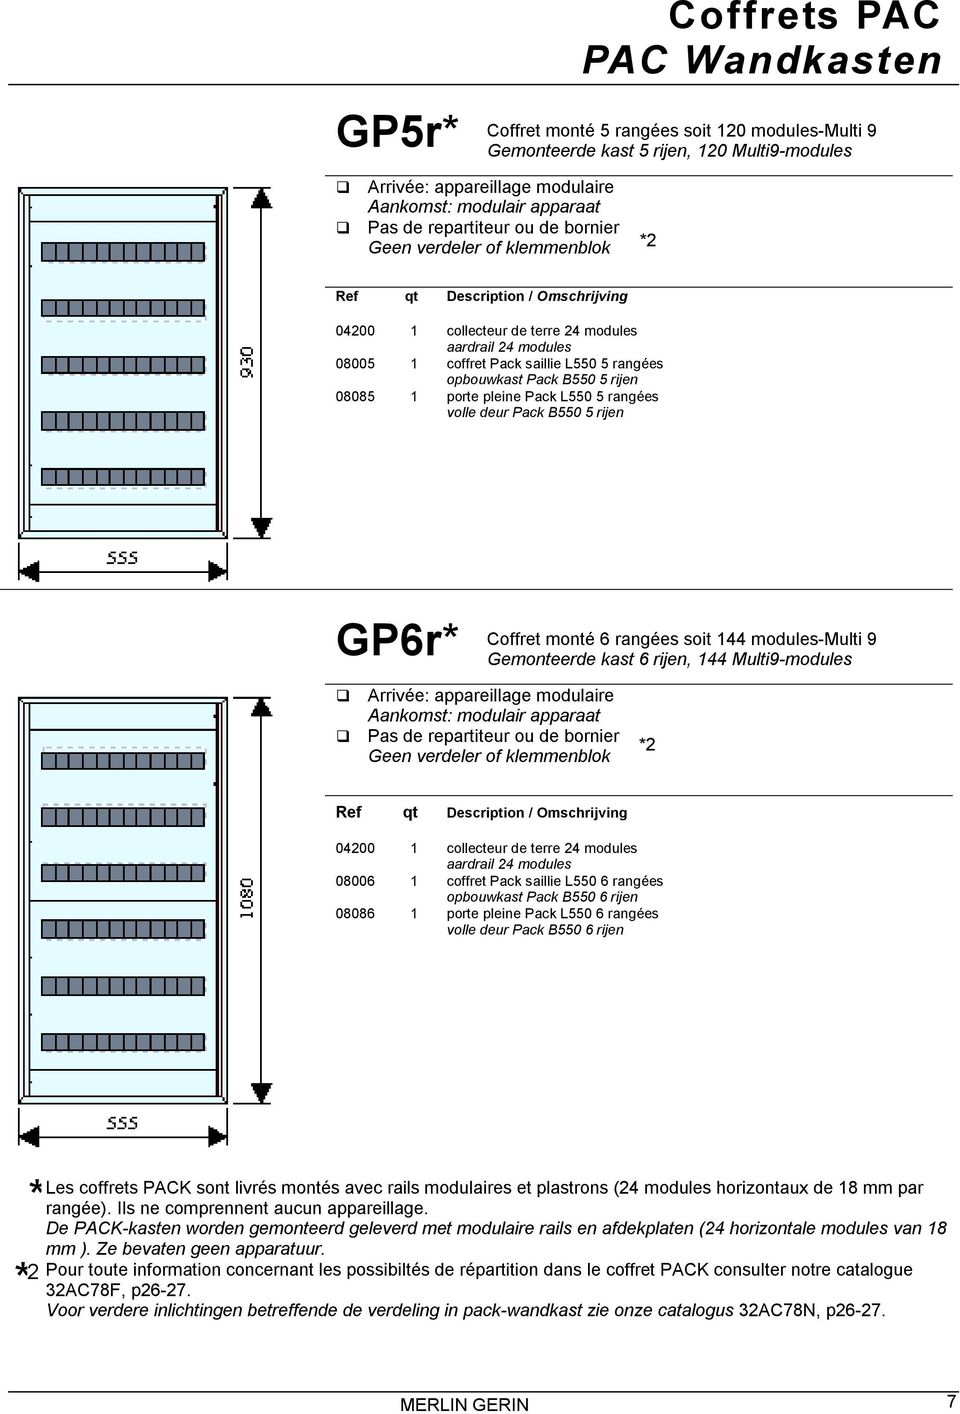 rijen GP6r* Coffret monté 6 rangées soit 144 modules-multi 9 Gemonteerde kast 6 rijen, 144 Multi9-modules " Arrivée: appareillage modulaire Aankomst: modulair apparaat " Pas de repartiteur ou de